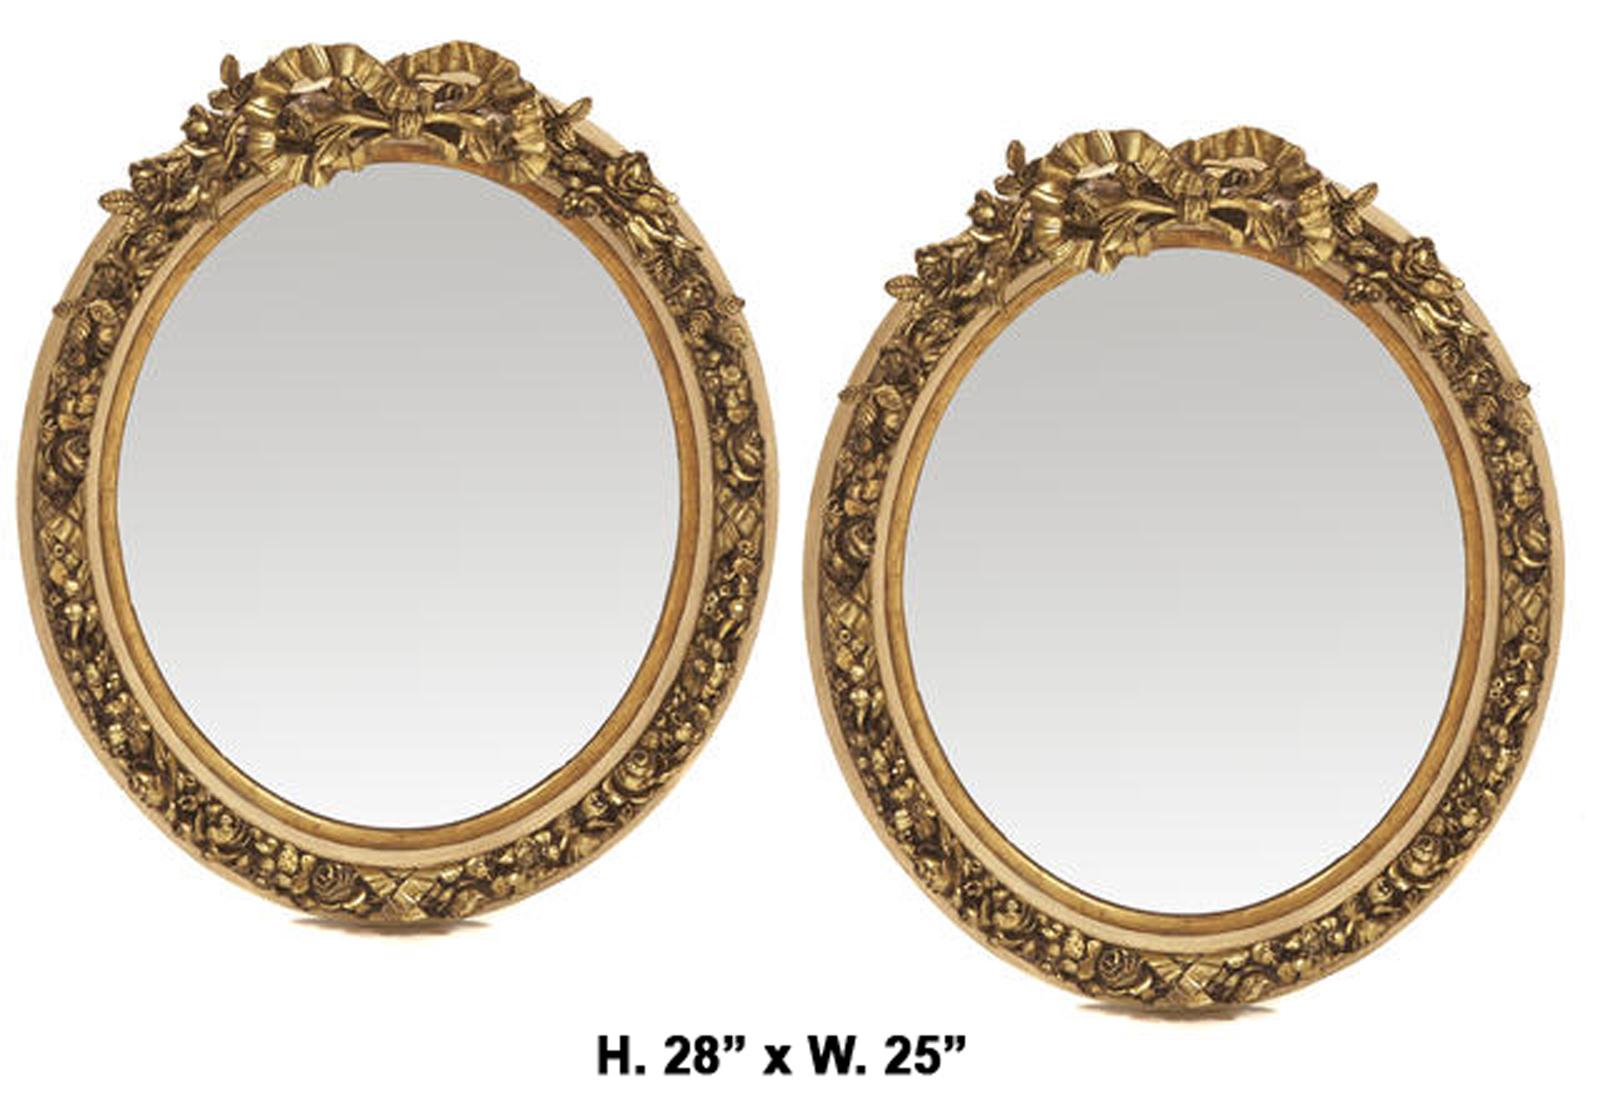 Zwei vergoldete ovale Spiegel im französischen Louis XV-Stil.
Mitte des 20. Jahrhunderts. 

Die Spiegel sind mit einem geschnitzten vergoldeten Band bekrönt und durchgehend mit Frucht-, Blumen- und Blattmotiven verziert, wobei der festonierte